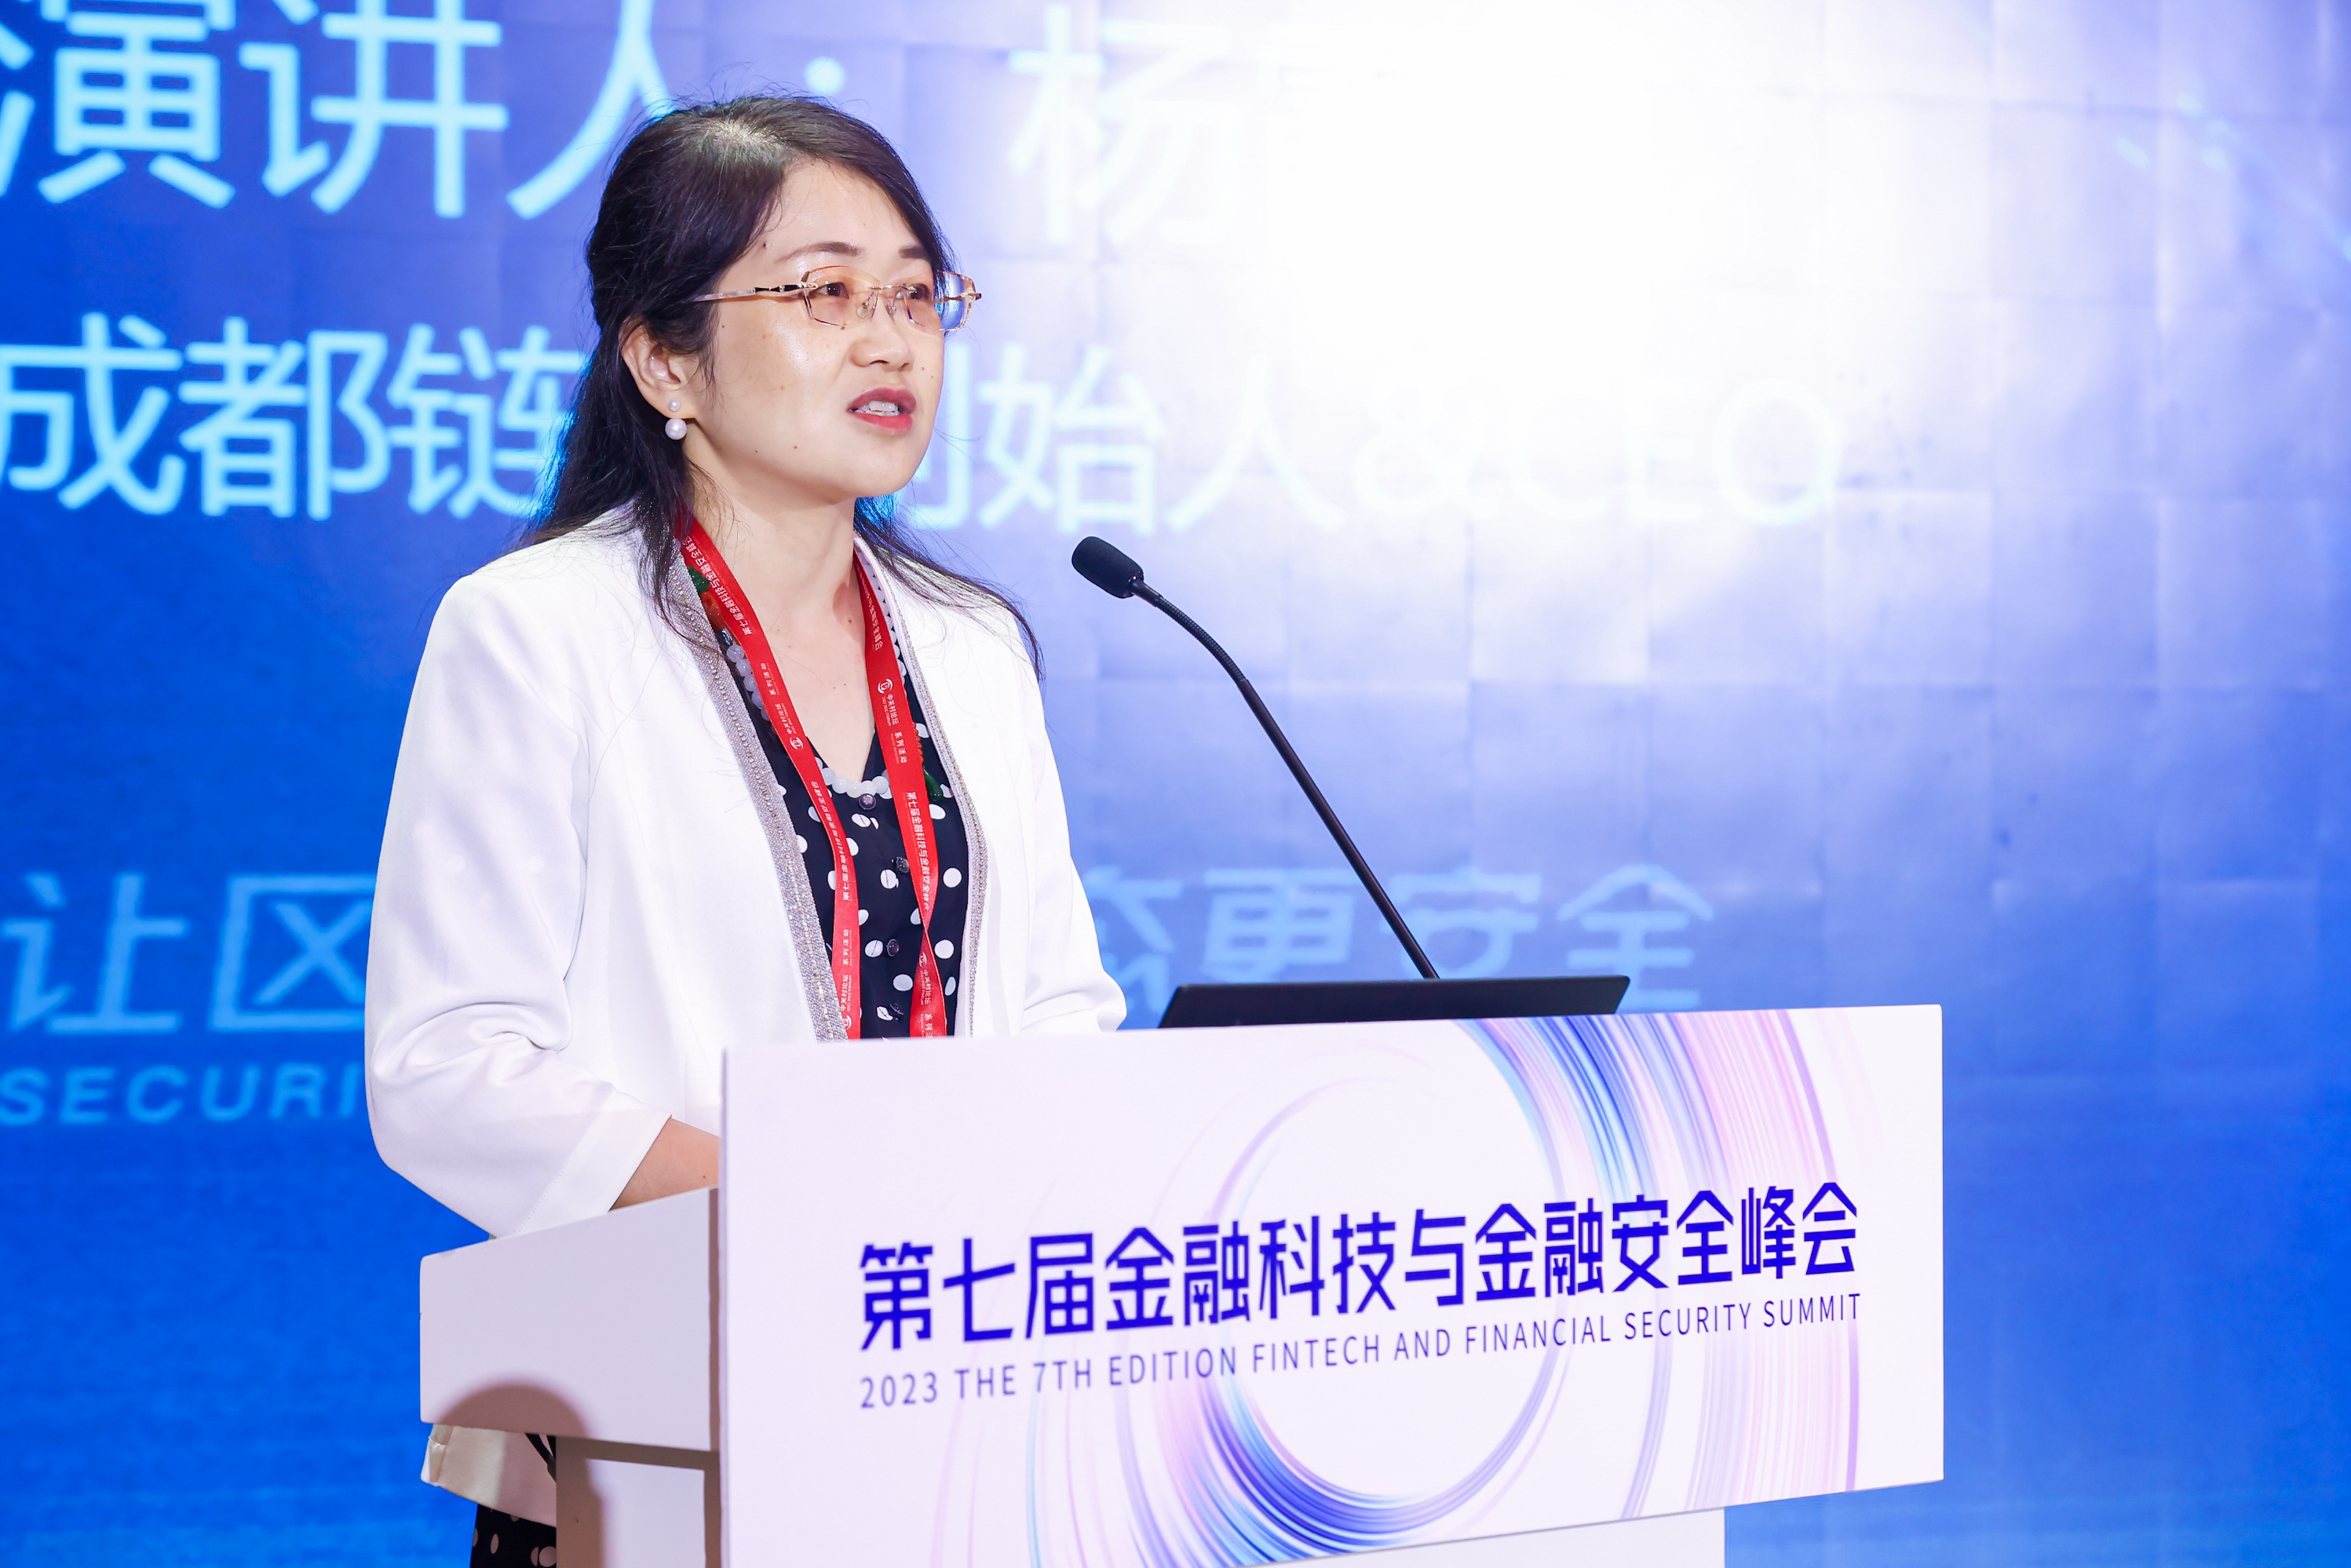 成都链安ceo杨霞教授受邀在web3行业峰会上发表主题演讲